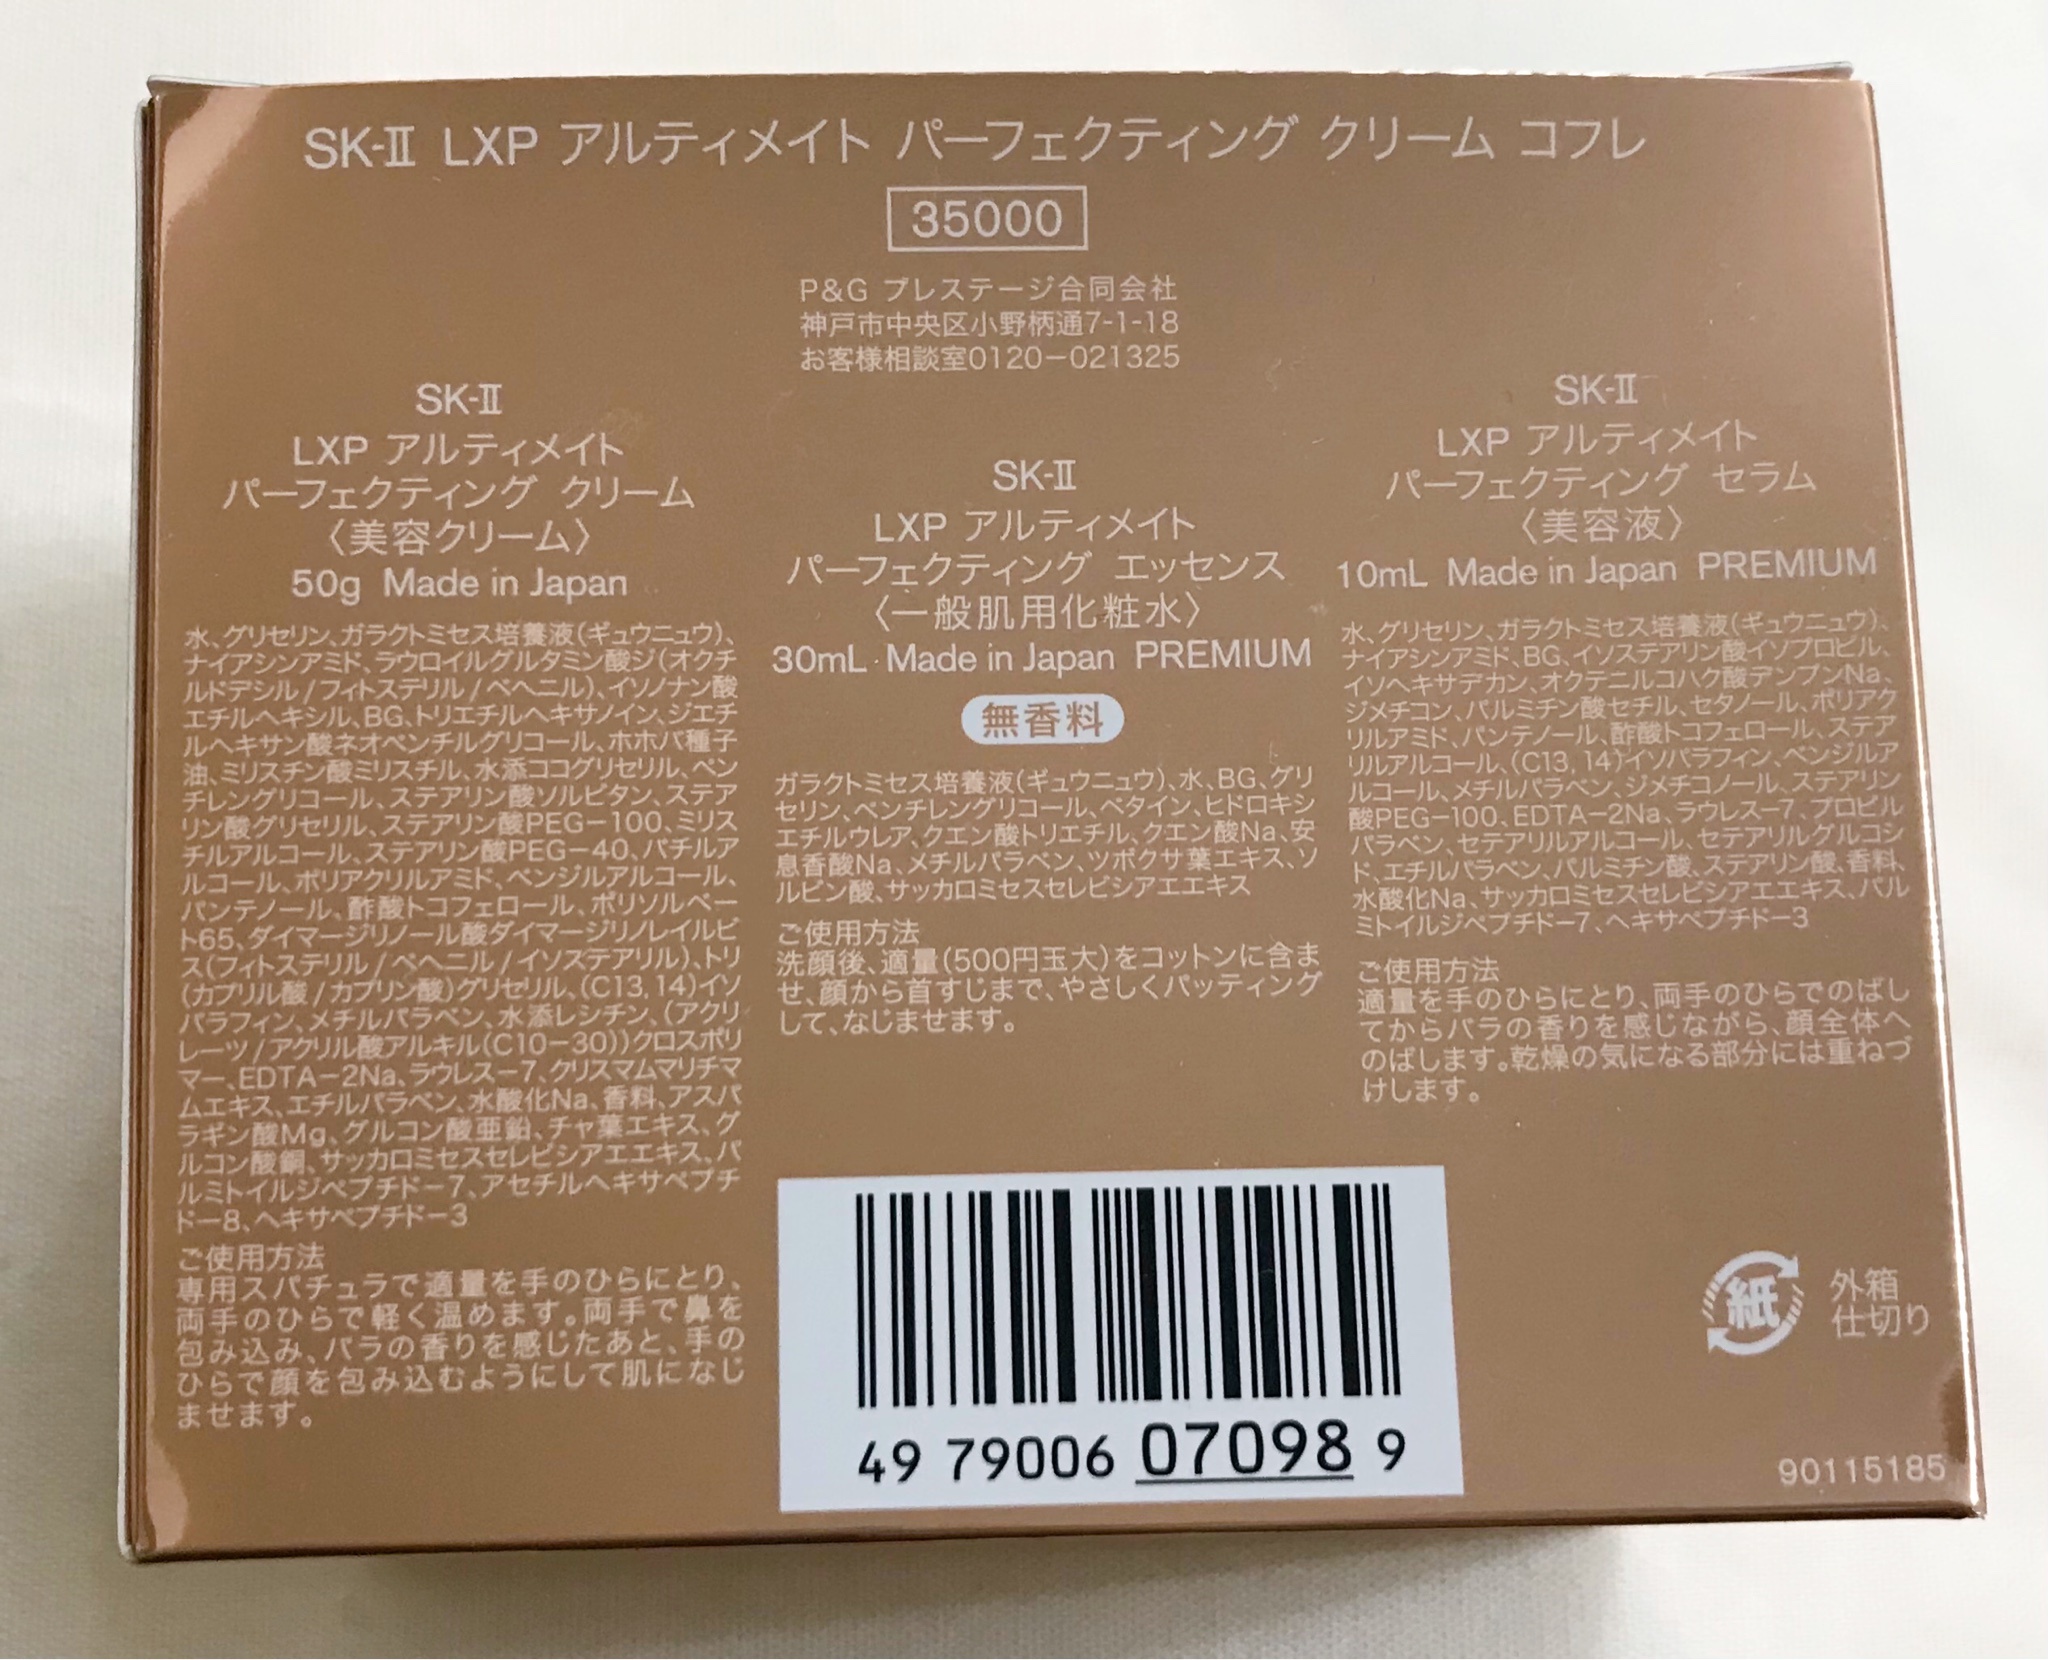 SK-II / LXP アルティメイト パーフェクティング クリームの公式商品